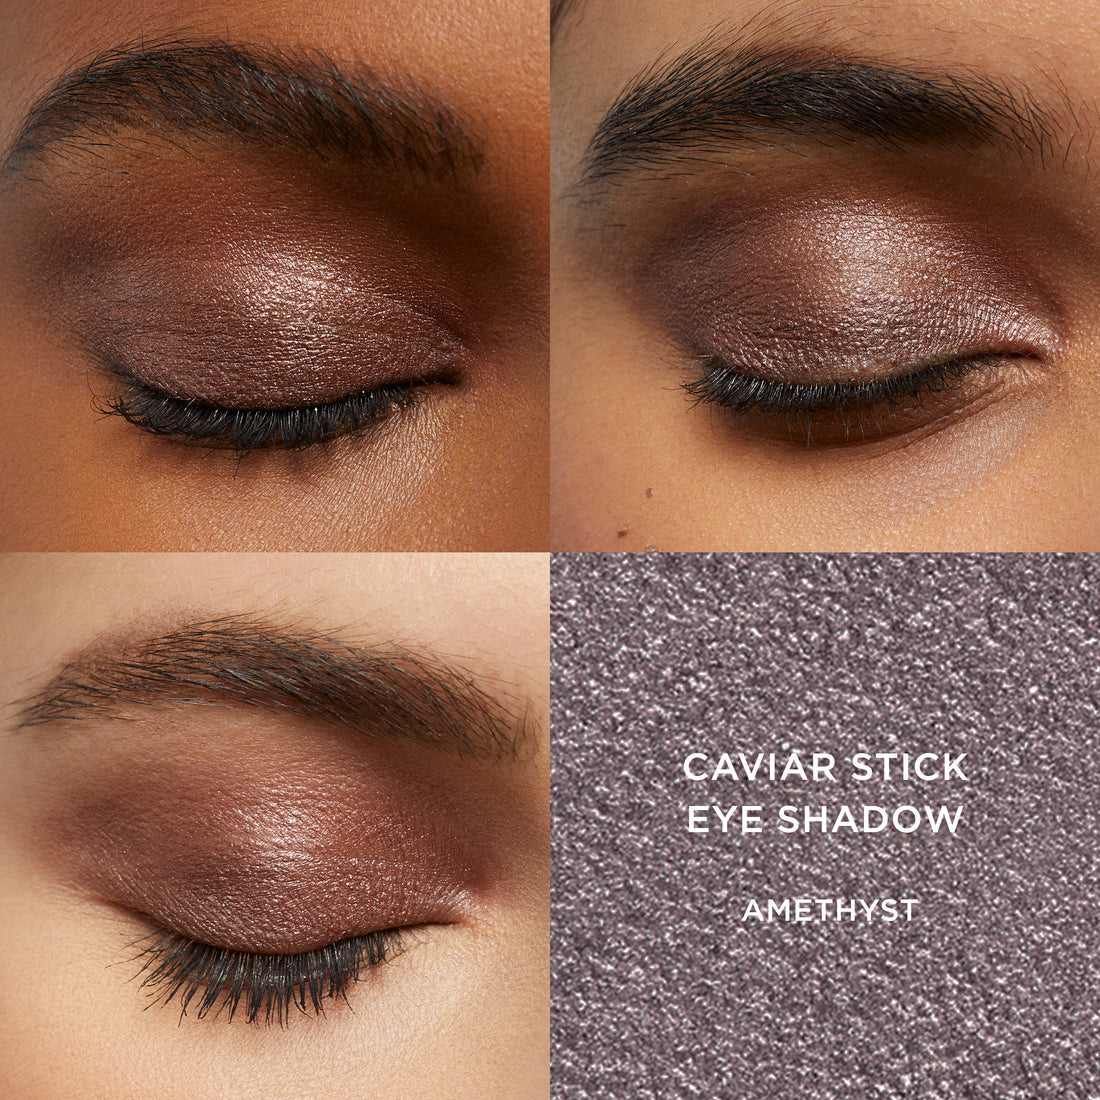 Cosmic Stars Caviar Stick Eye Shadow Trio - View 8